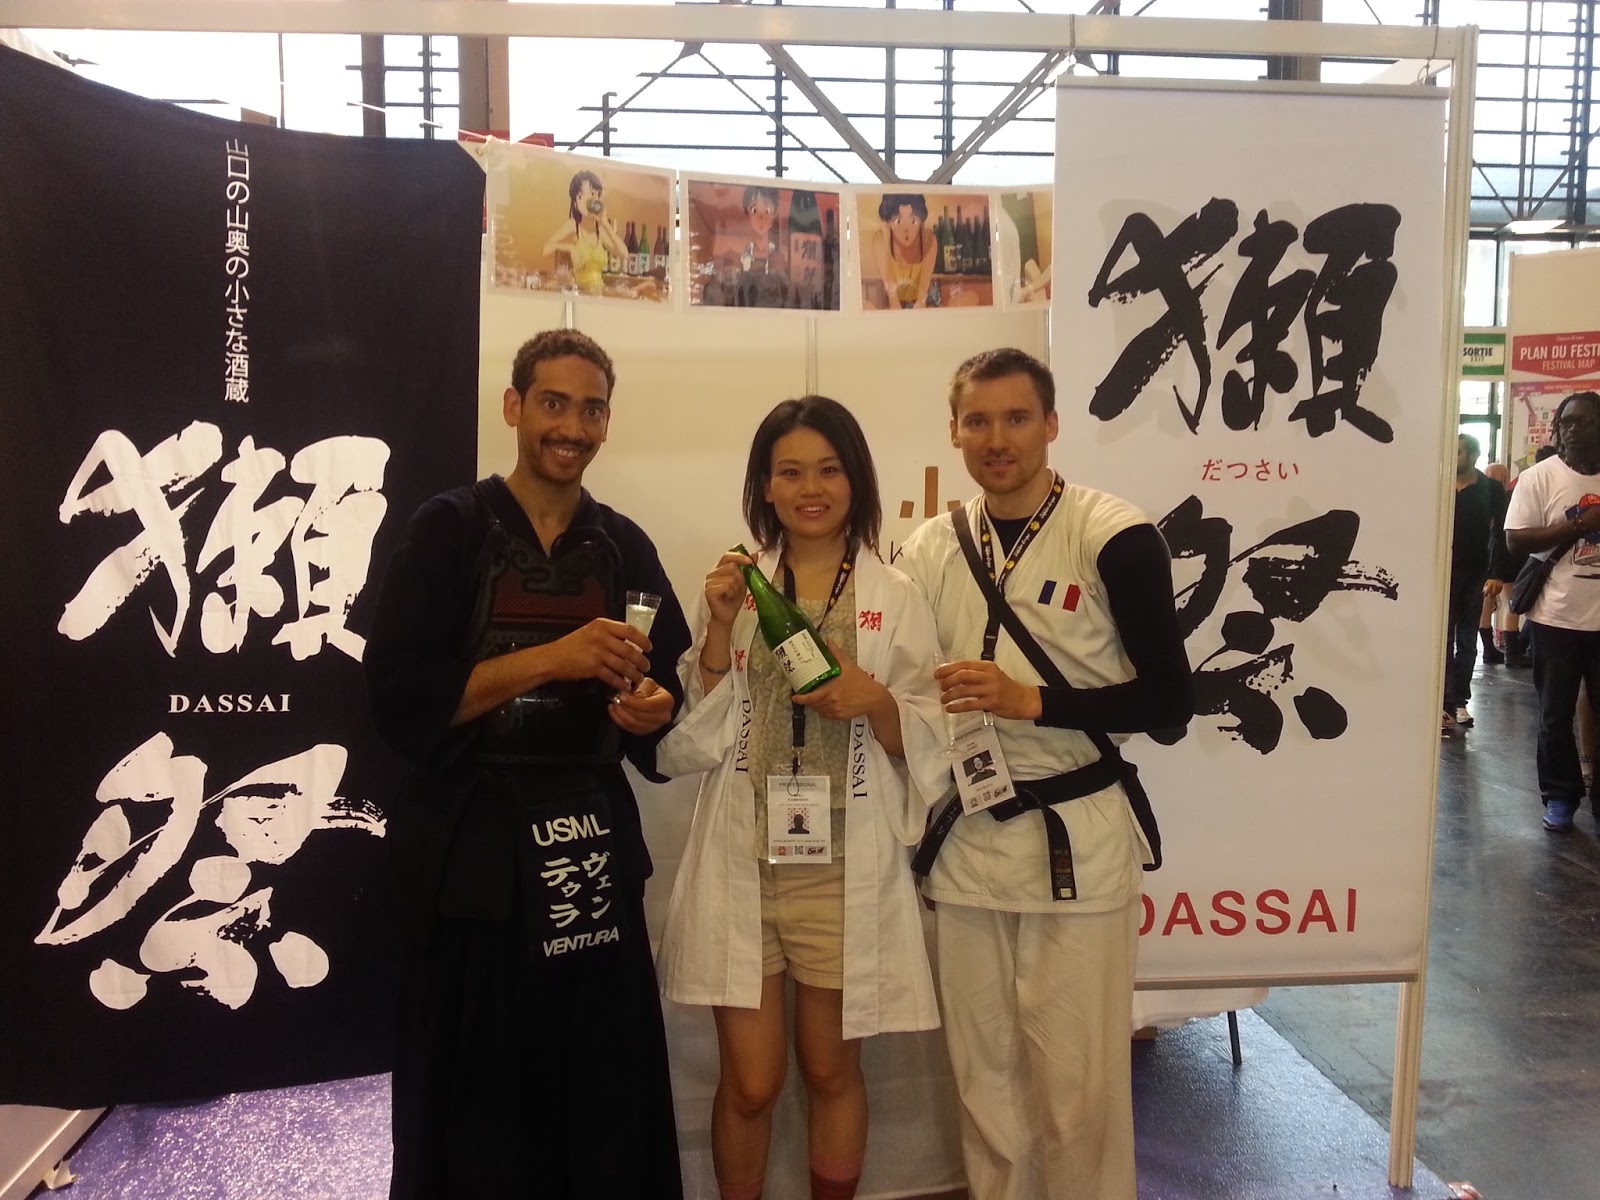 Jerome et Xavier à la Japan expo 2014